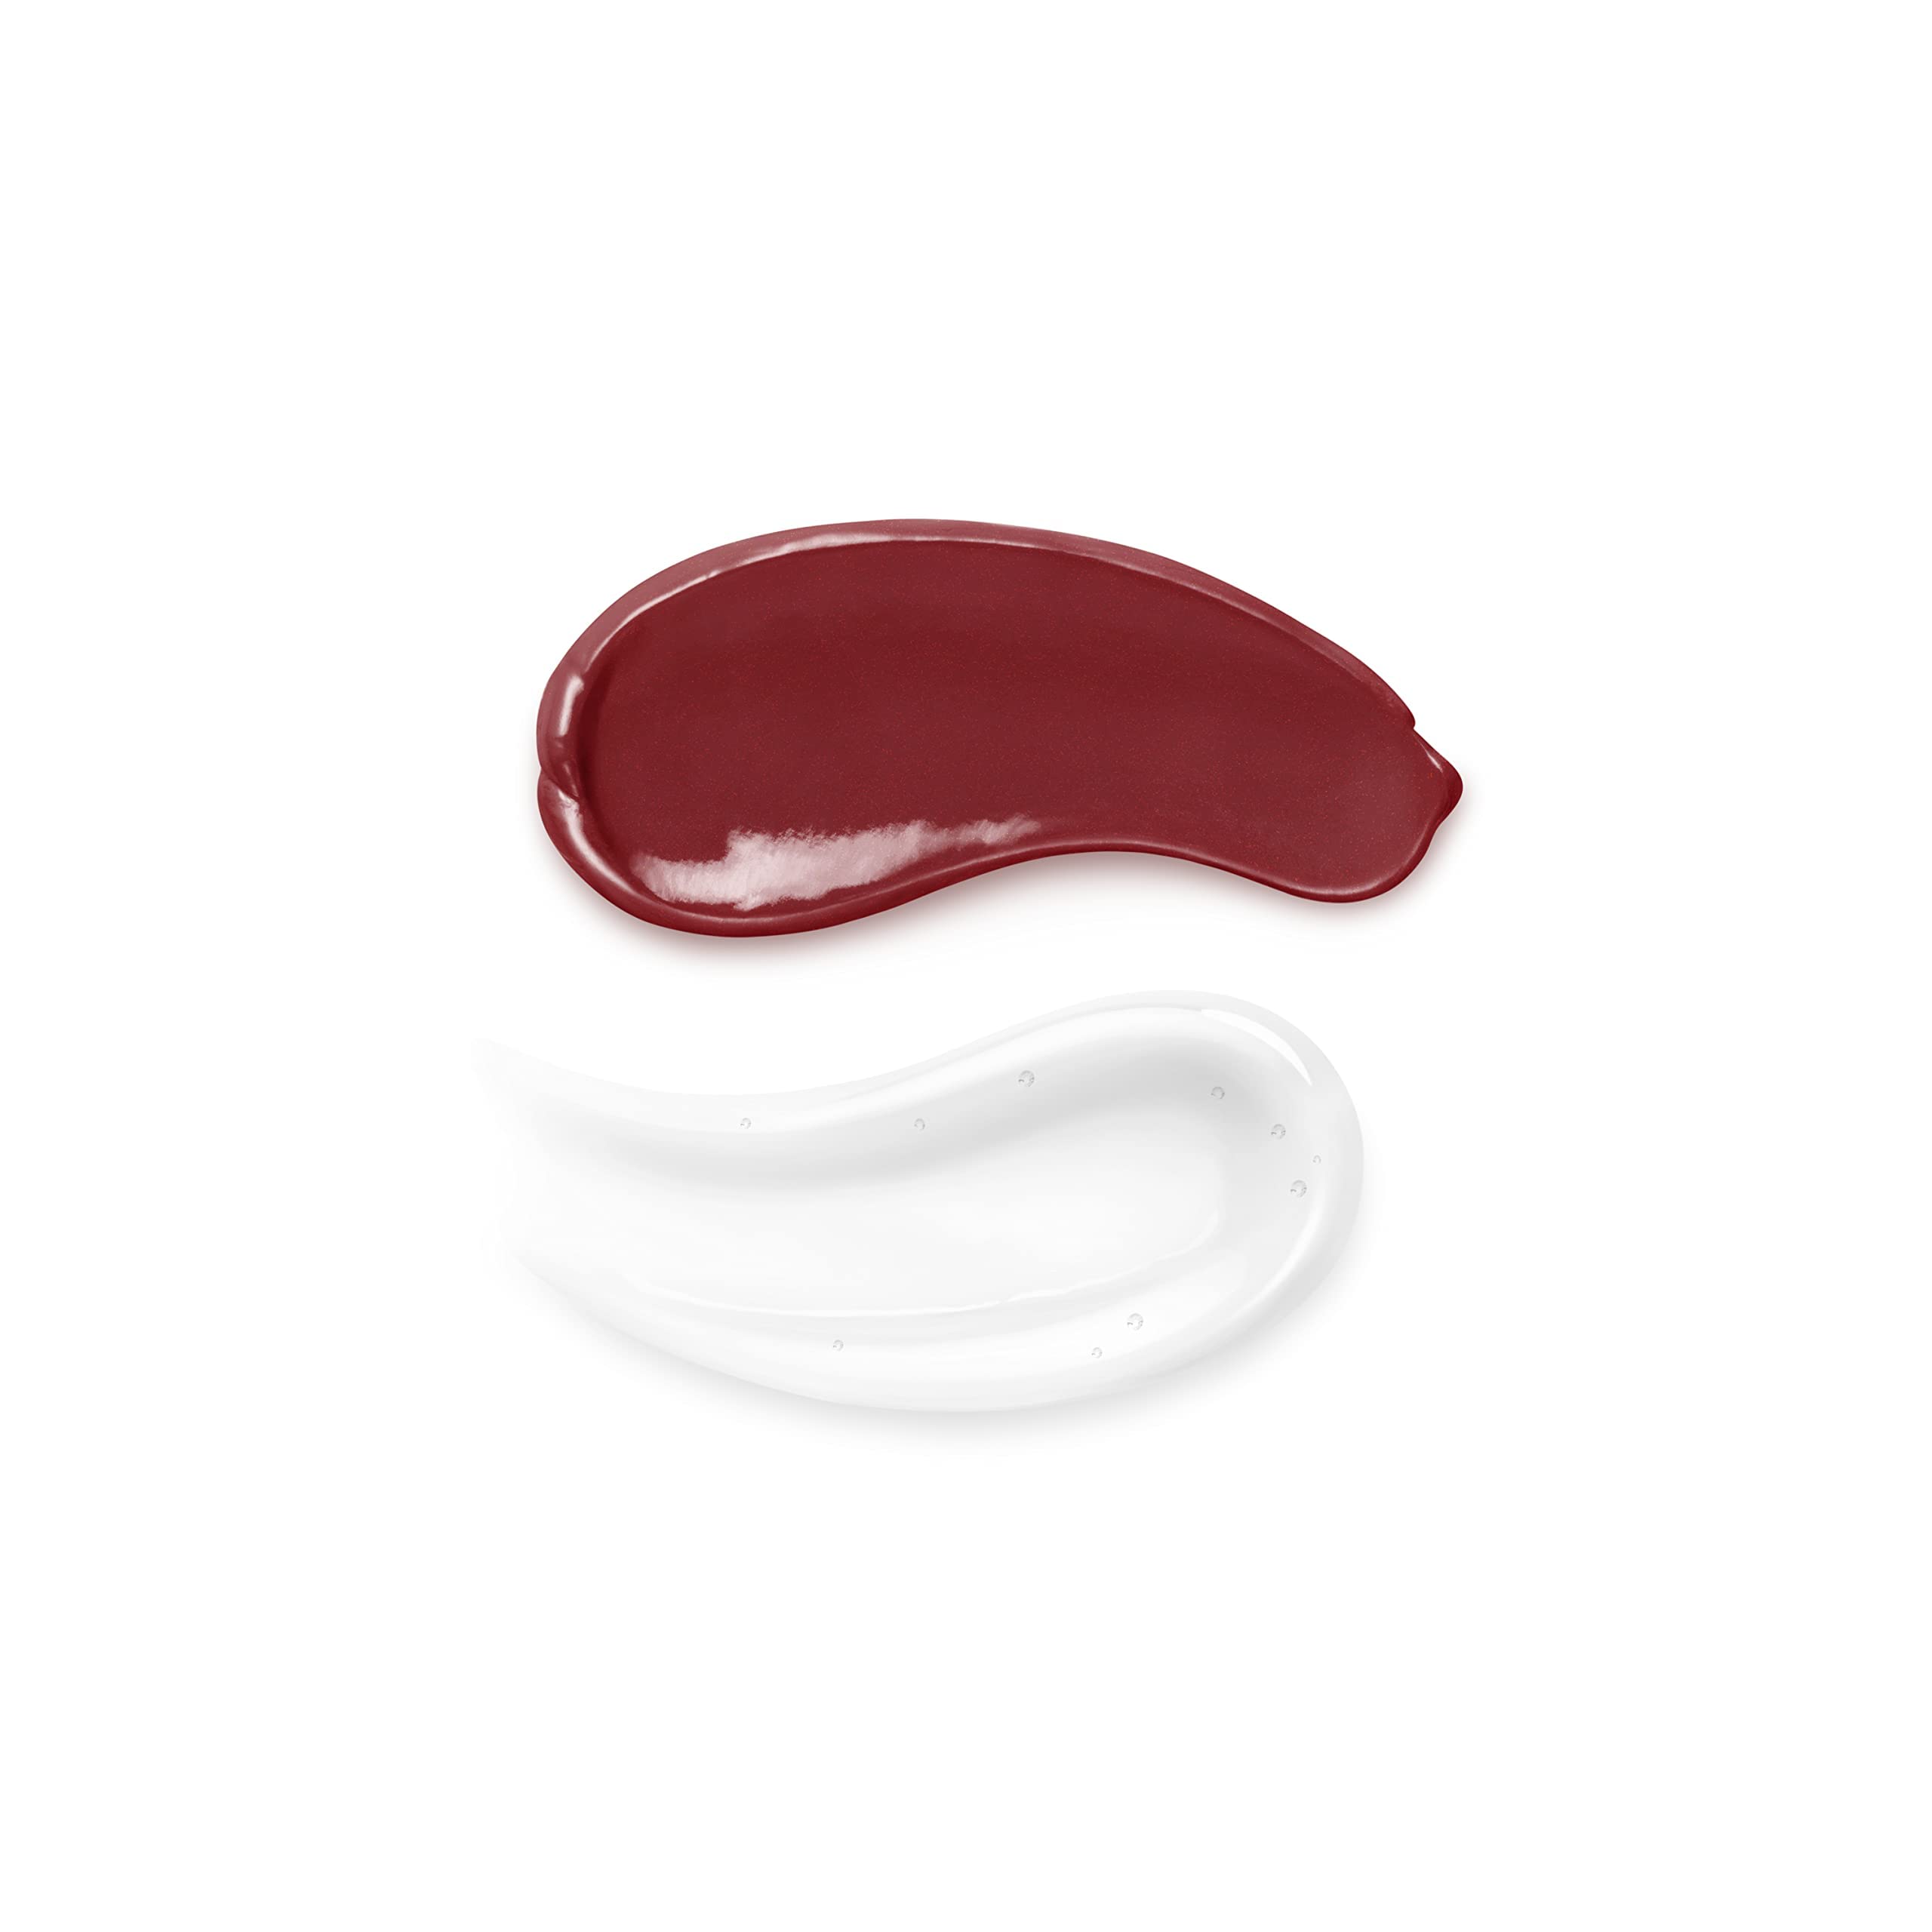 Kiko Milano Unlimited Double Touch Liquid Lipstick | Ramfa Beauty #color_106